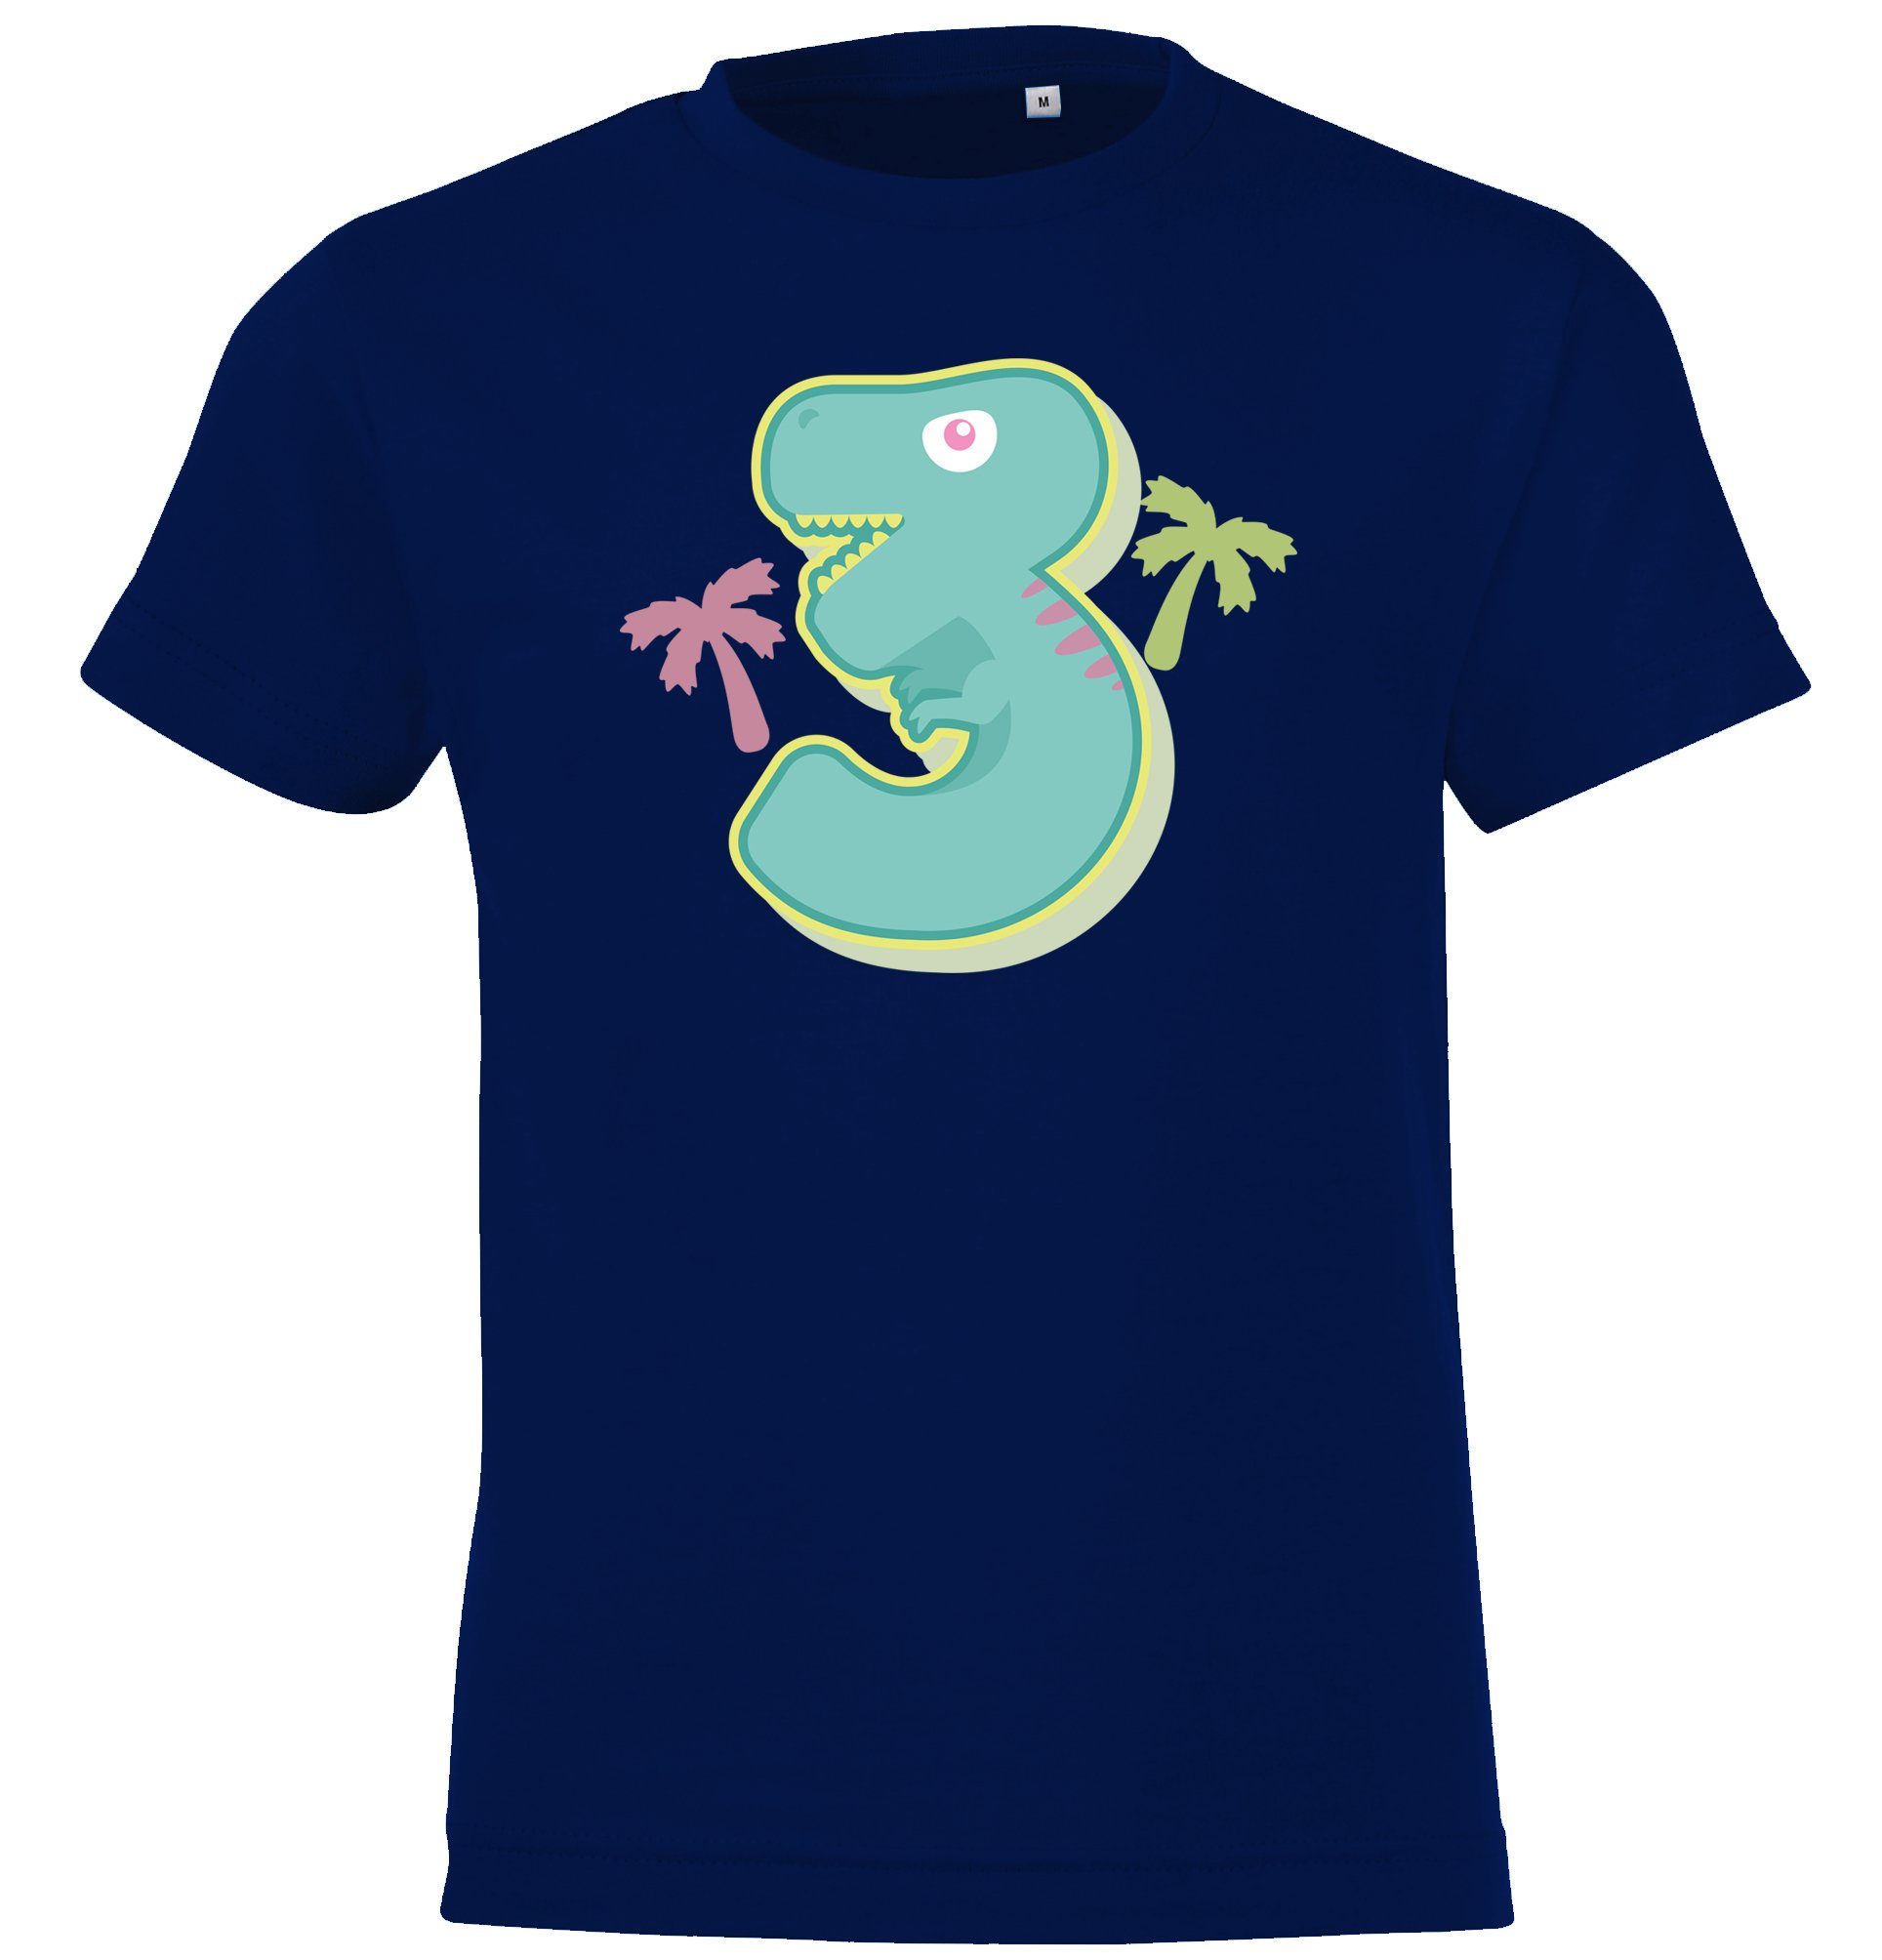 lustigem T-Shirt Designz Alt mit T-Shirt 3 Youth Jungen Frontprint für Jahre Geburtstags Navyblau